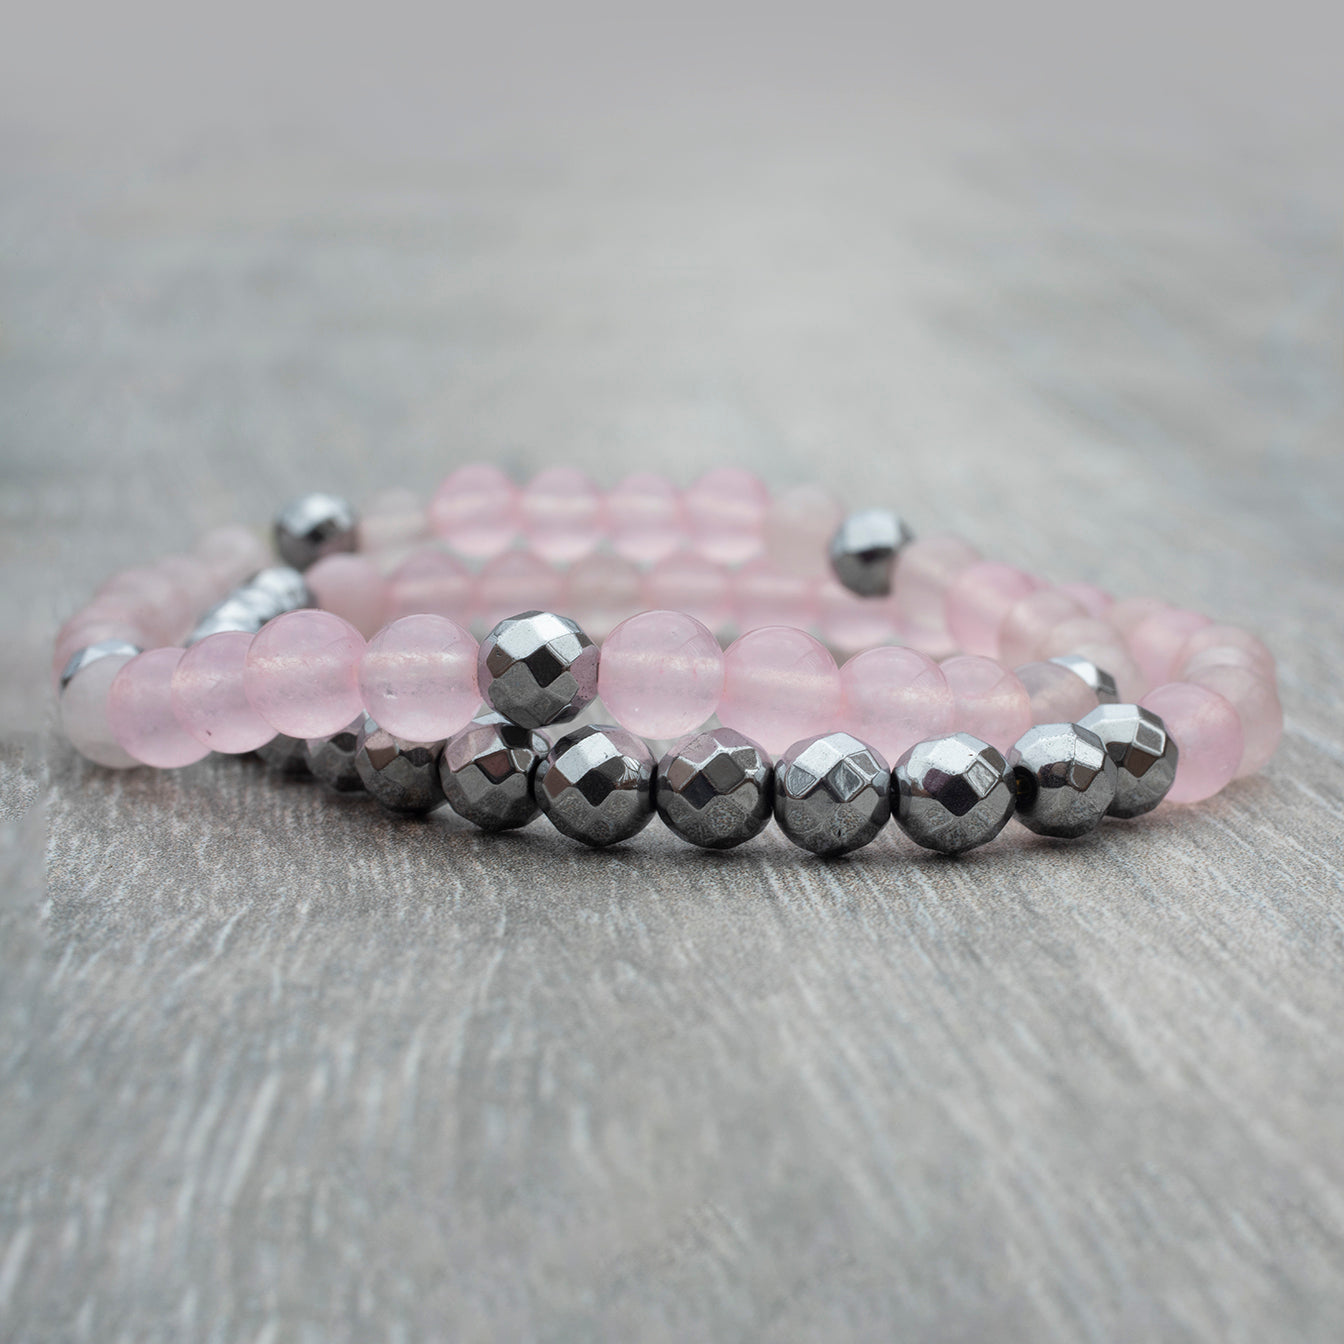 Duo de bracelets avec des pierres fines quartz rose et hématite argent.